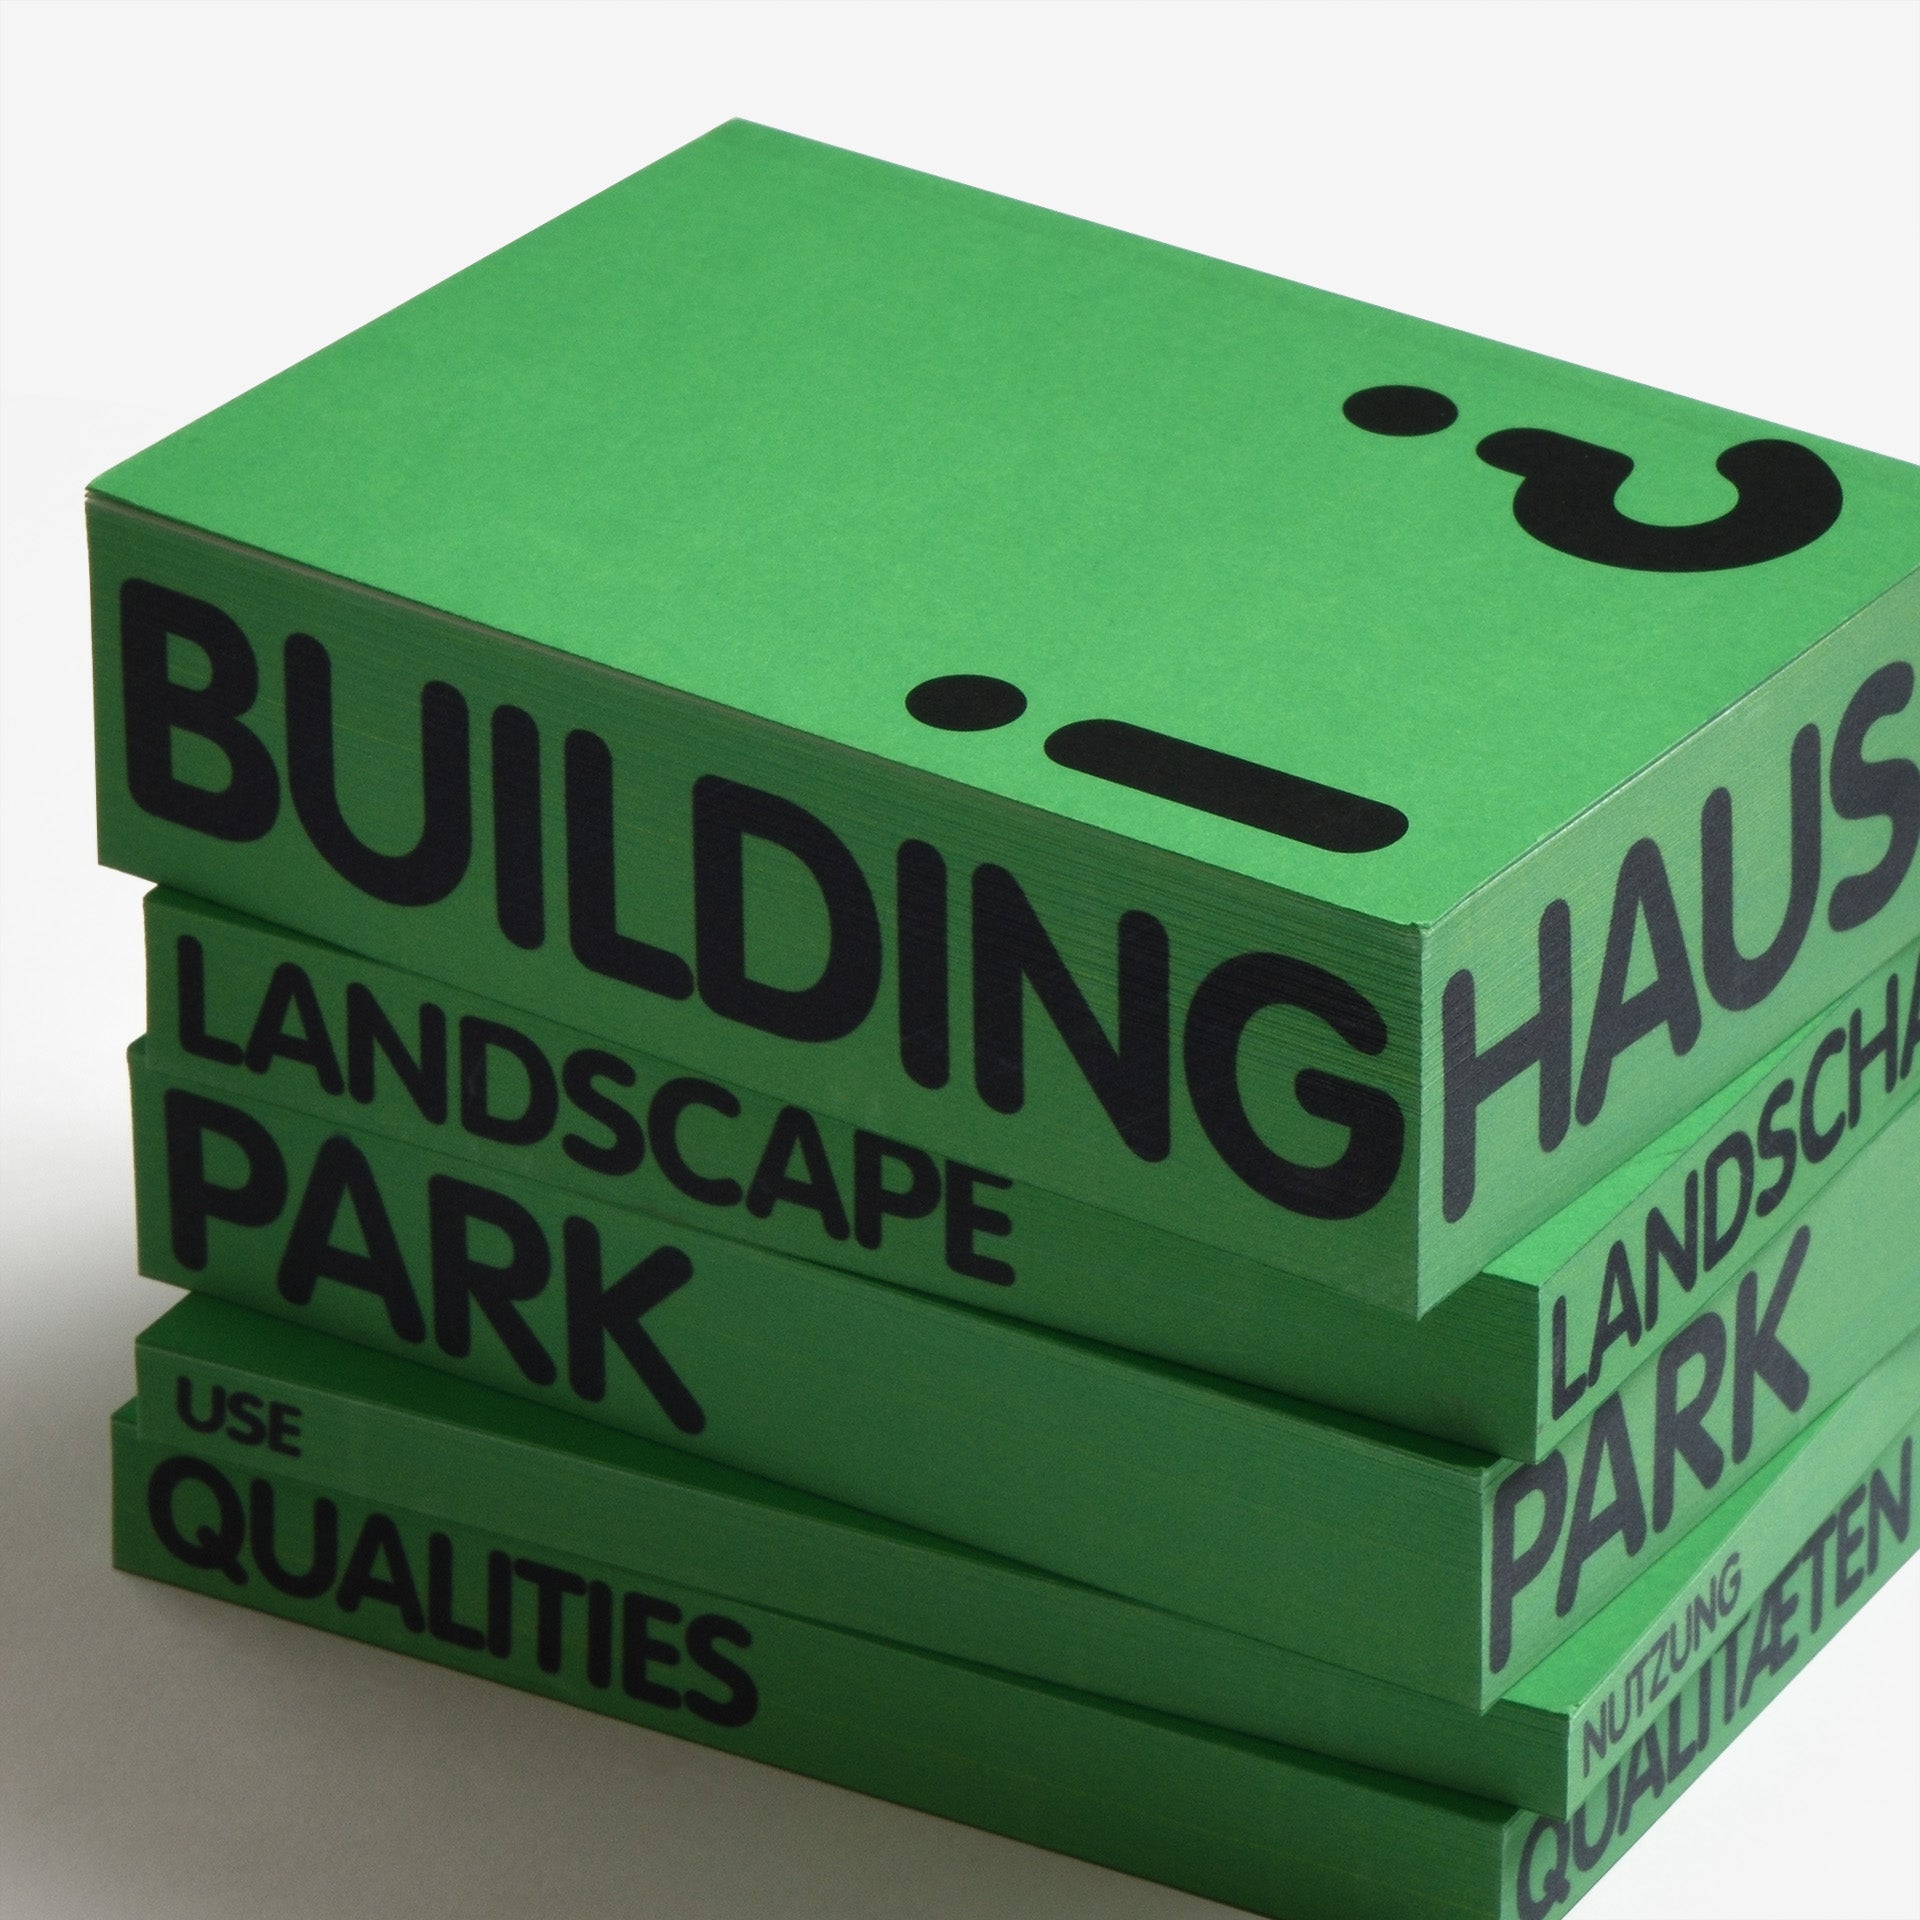 Landscape for Architects: Landscape, Park, Building, Qualities, Use